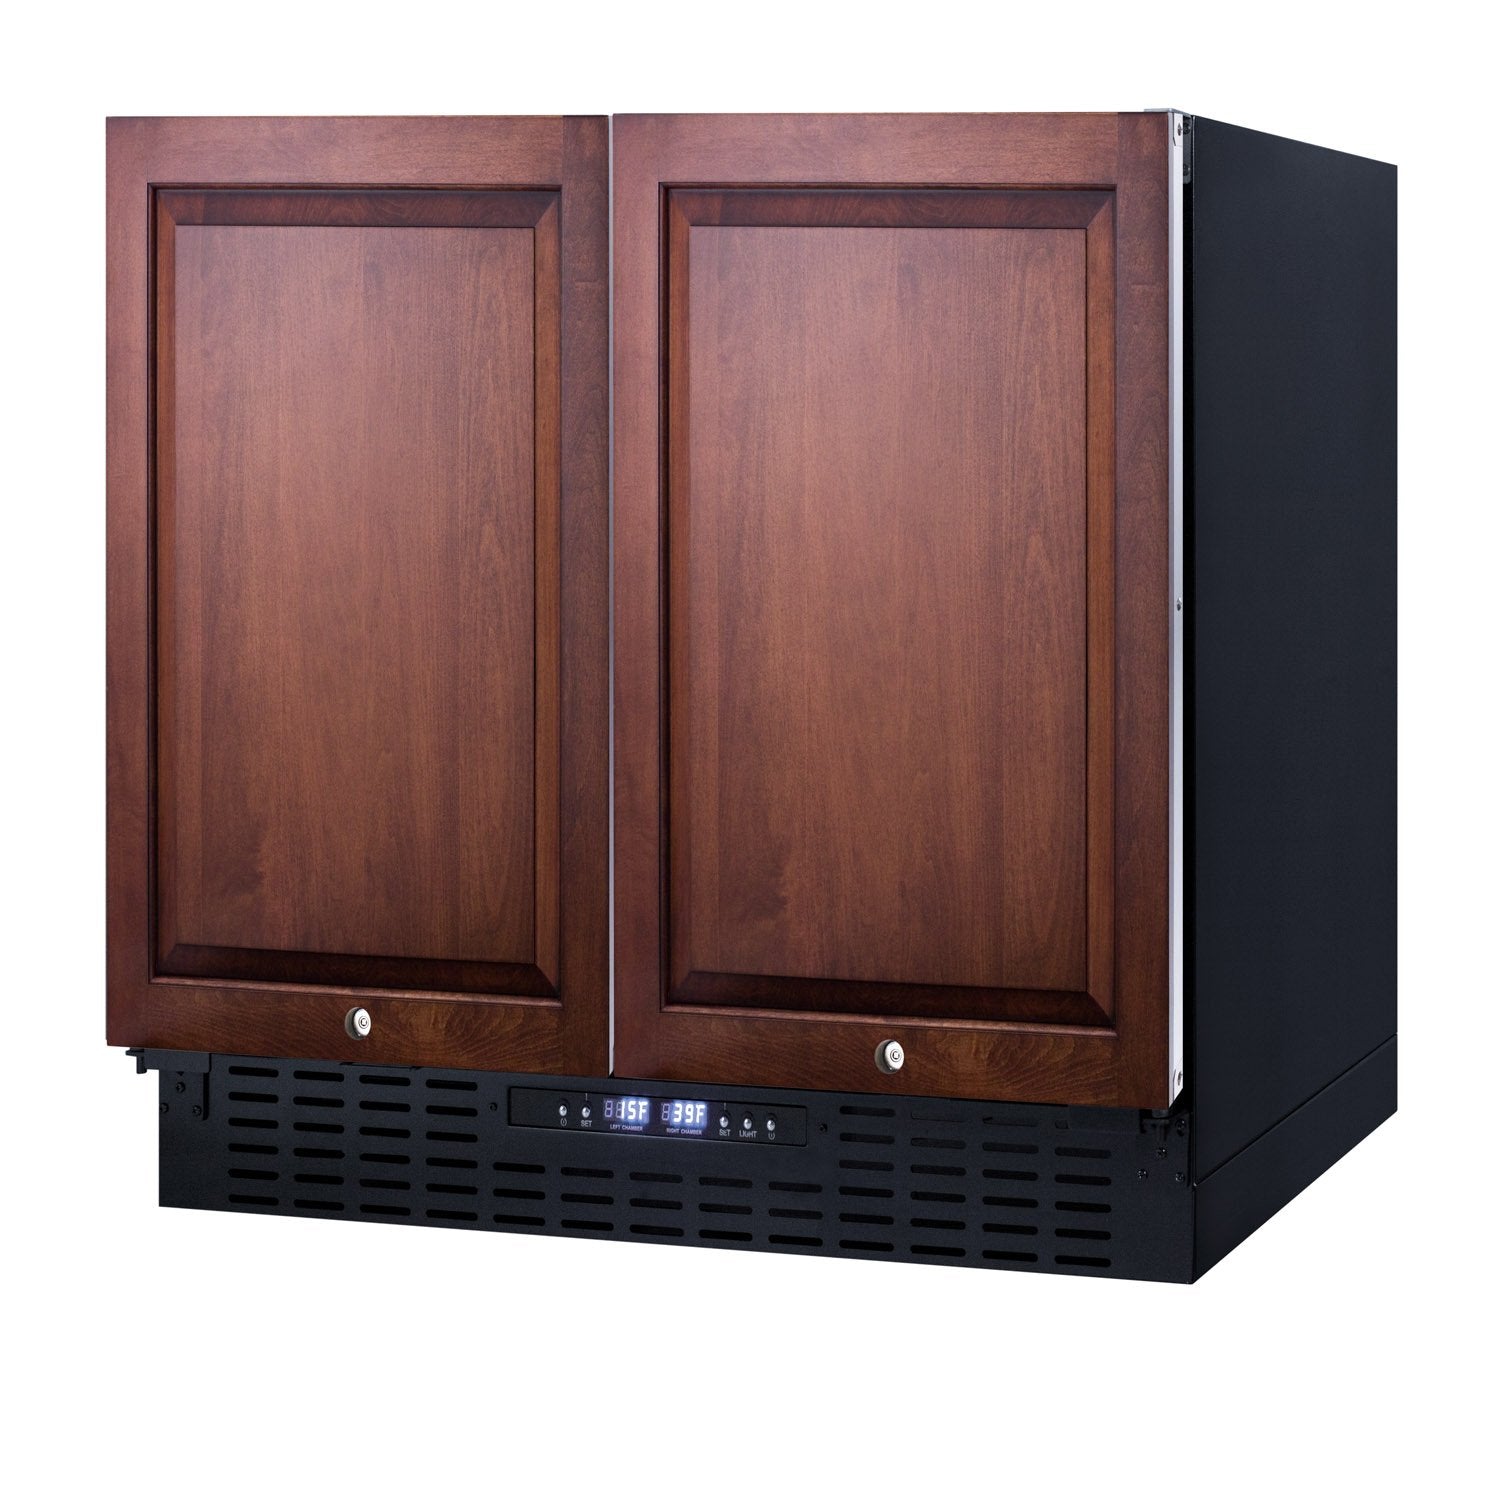 SUMMIT 36" Wide Built-In Refrigerator-Freezer